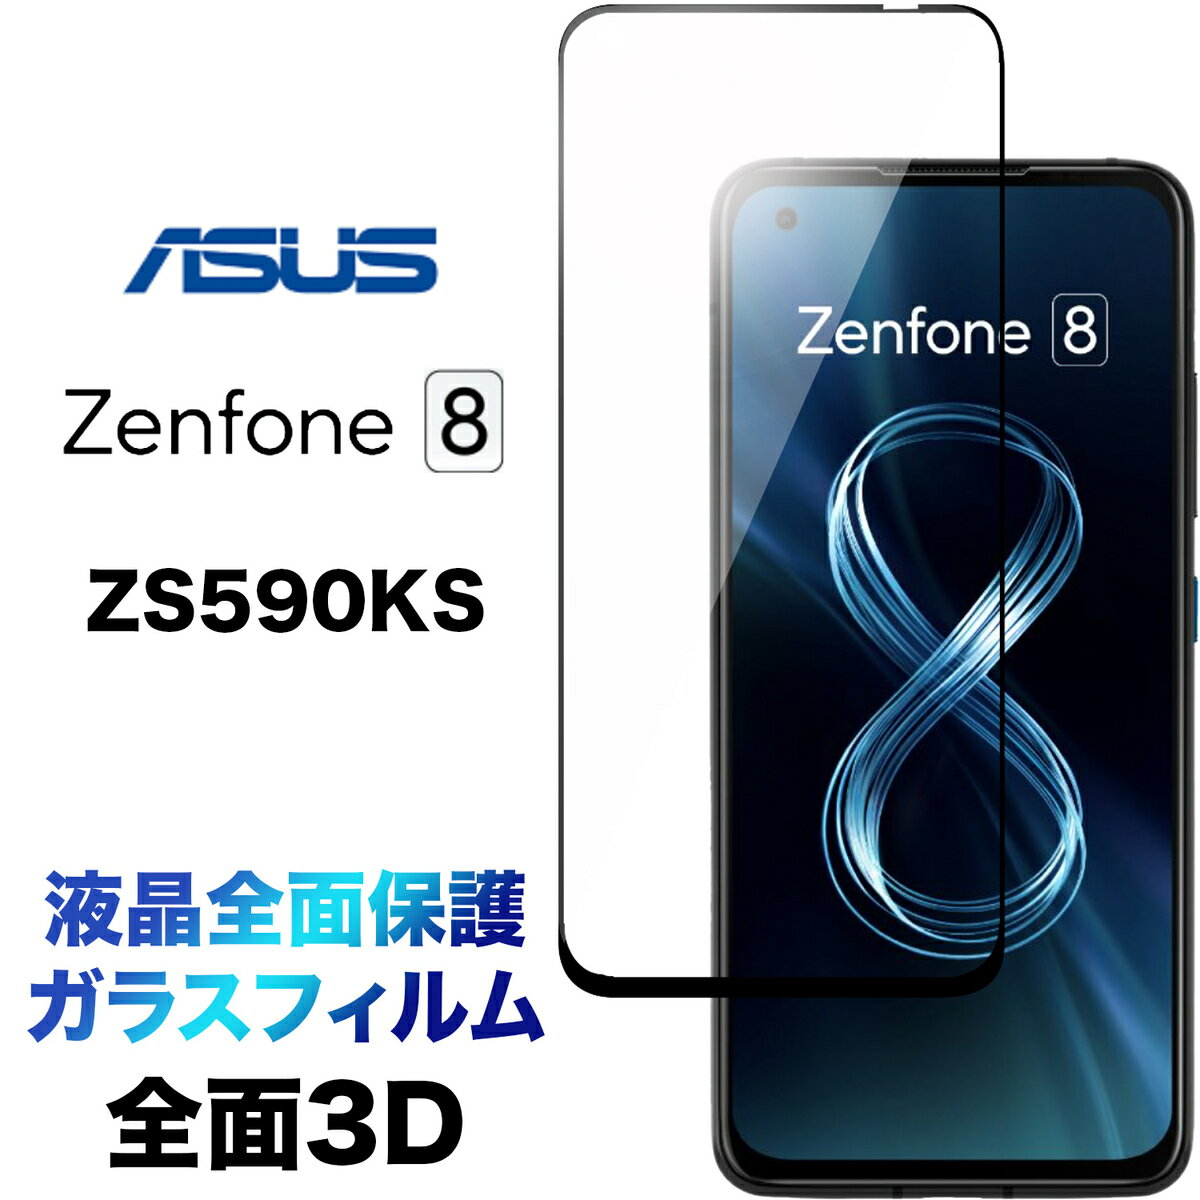 tSʕی ZS590KS ASUS Zenphone 8 3D tی ʕی KXtB یtB KX dx9H N[i[V[gt EhGbW GCX[X [tH zenphone8 t`܂ Sʕی